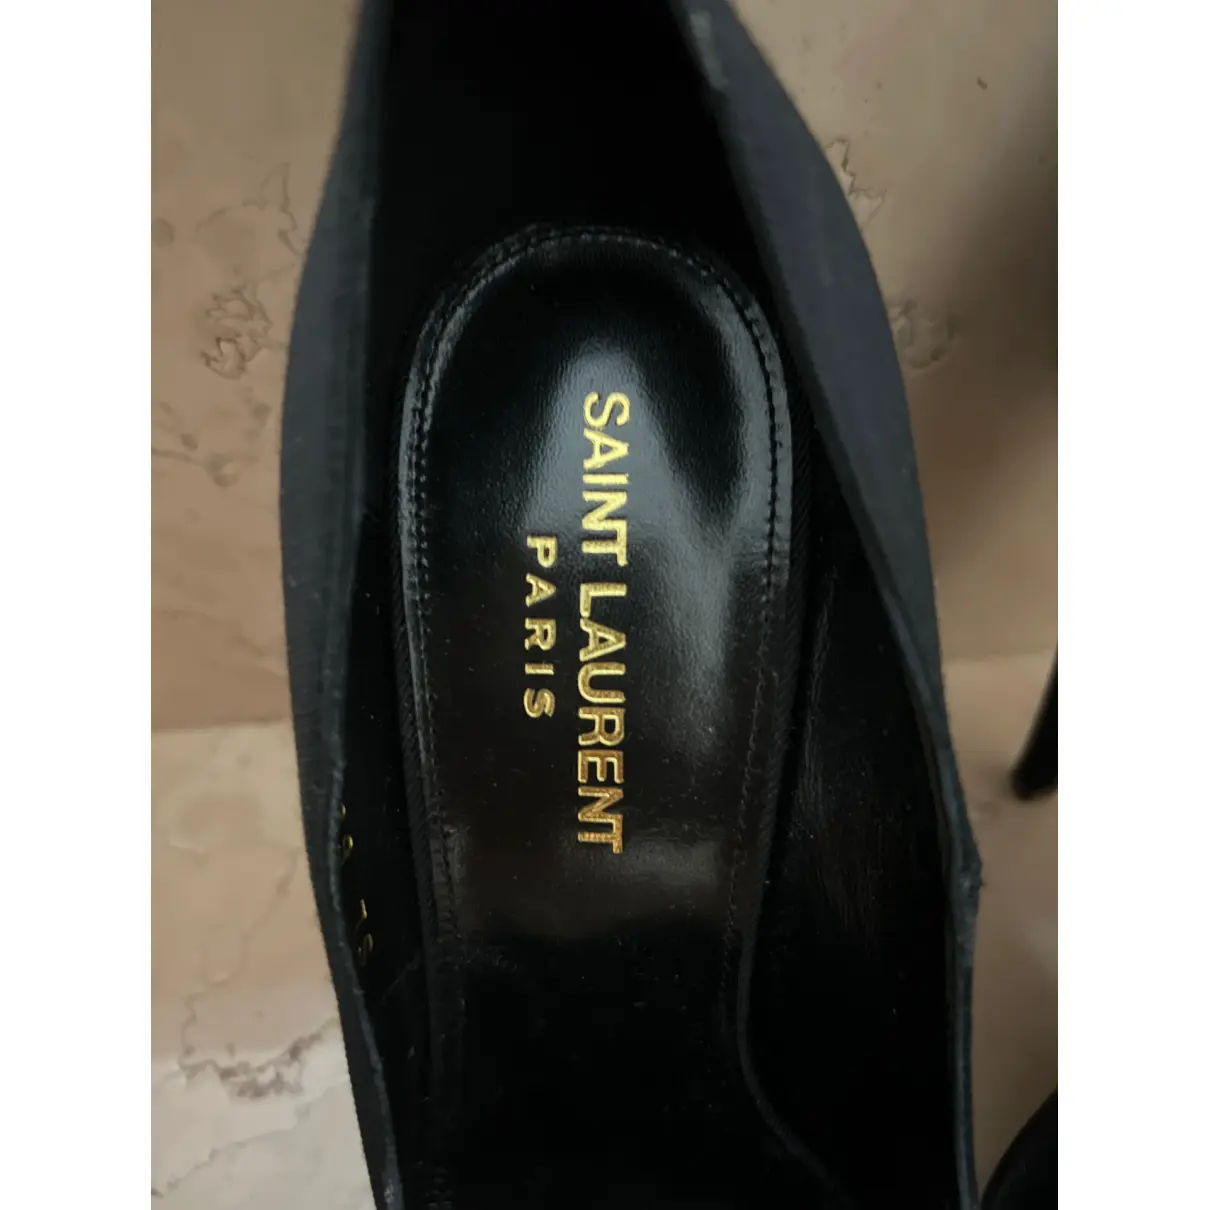 Buy Saint Laurent Cloth heels online